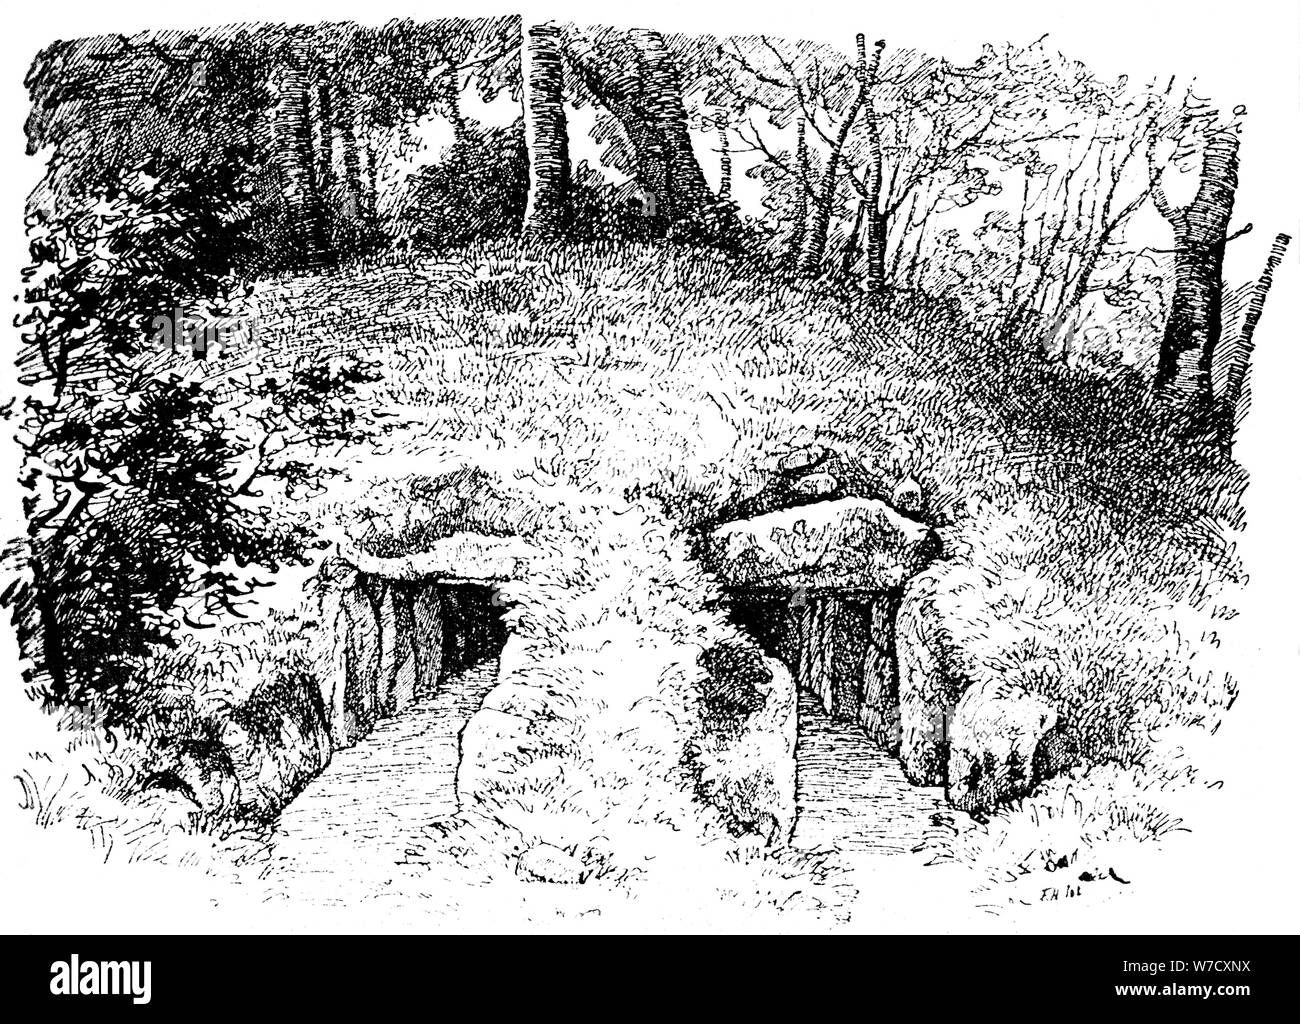 Tumulus de l'âge de pierre contenant deux chambres, atelier, Danemark, 1913. Artiste : Inconnu Banque D'Images